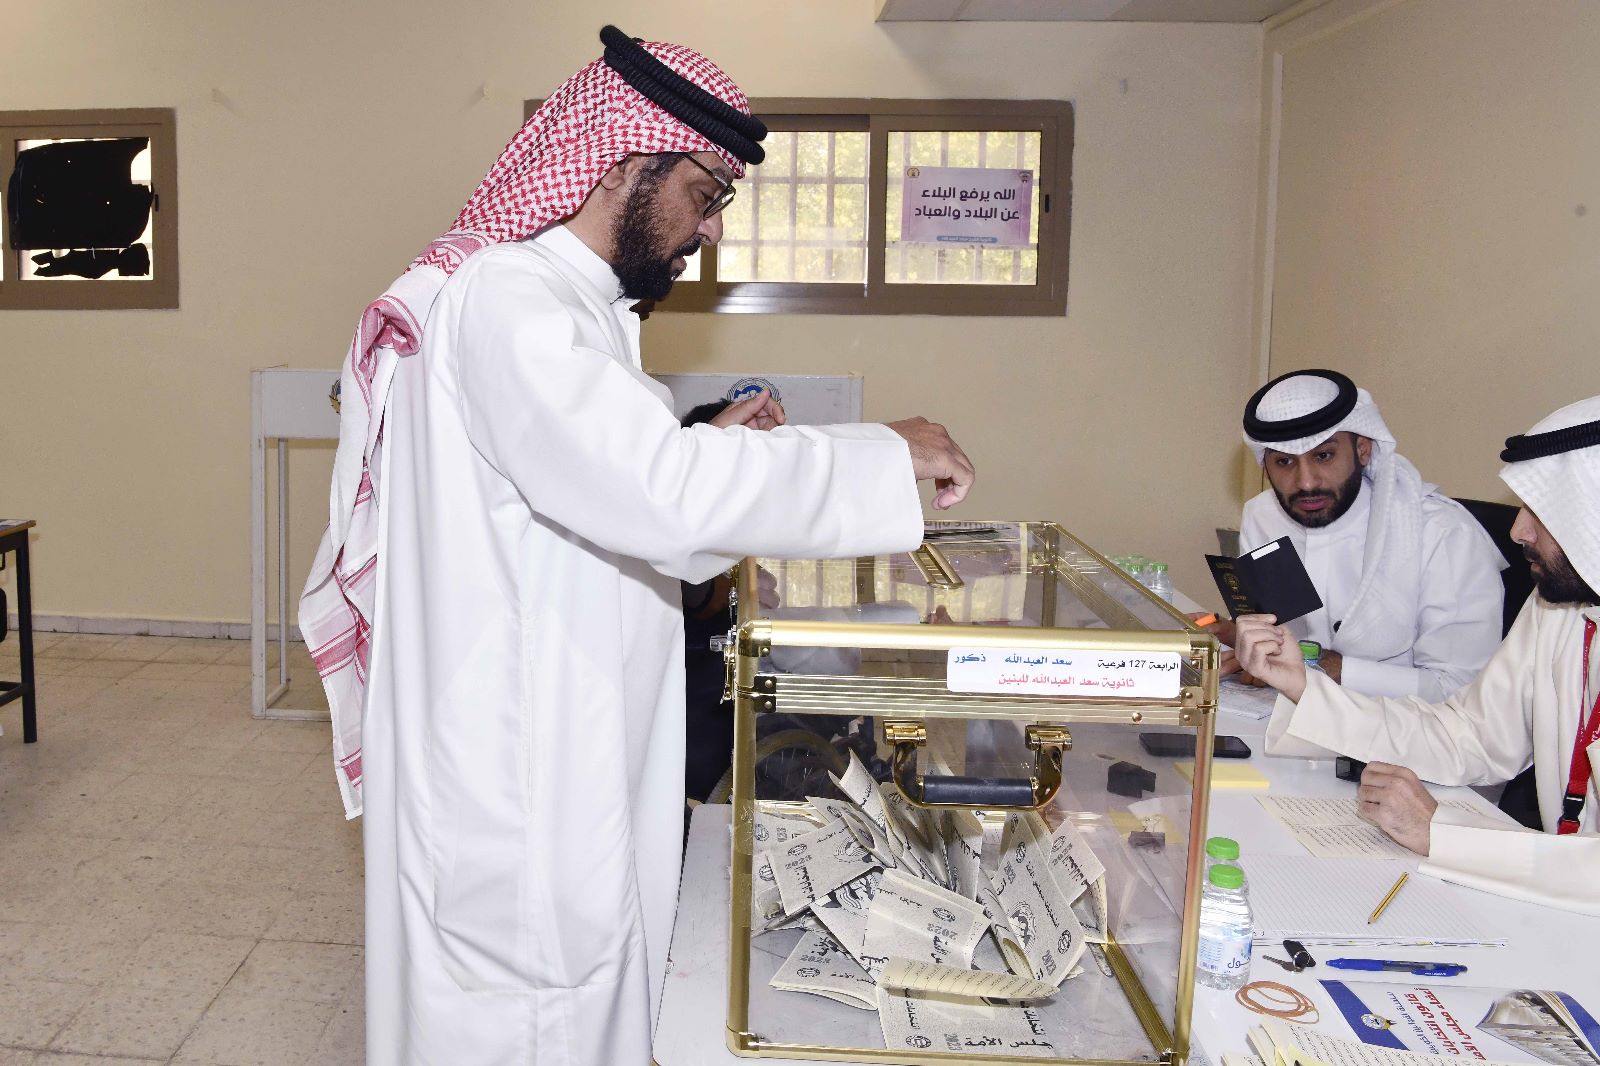 Ramadan influence-t-il la participation aux élections au Koweït?